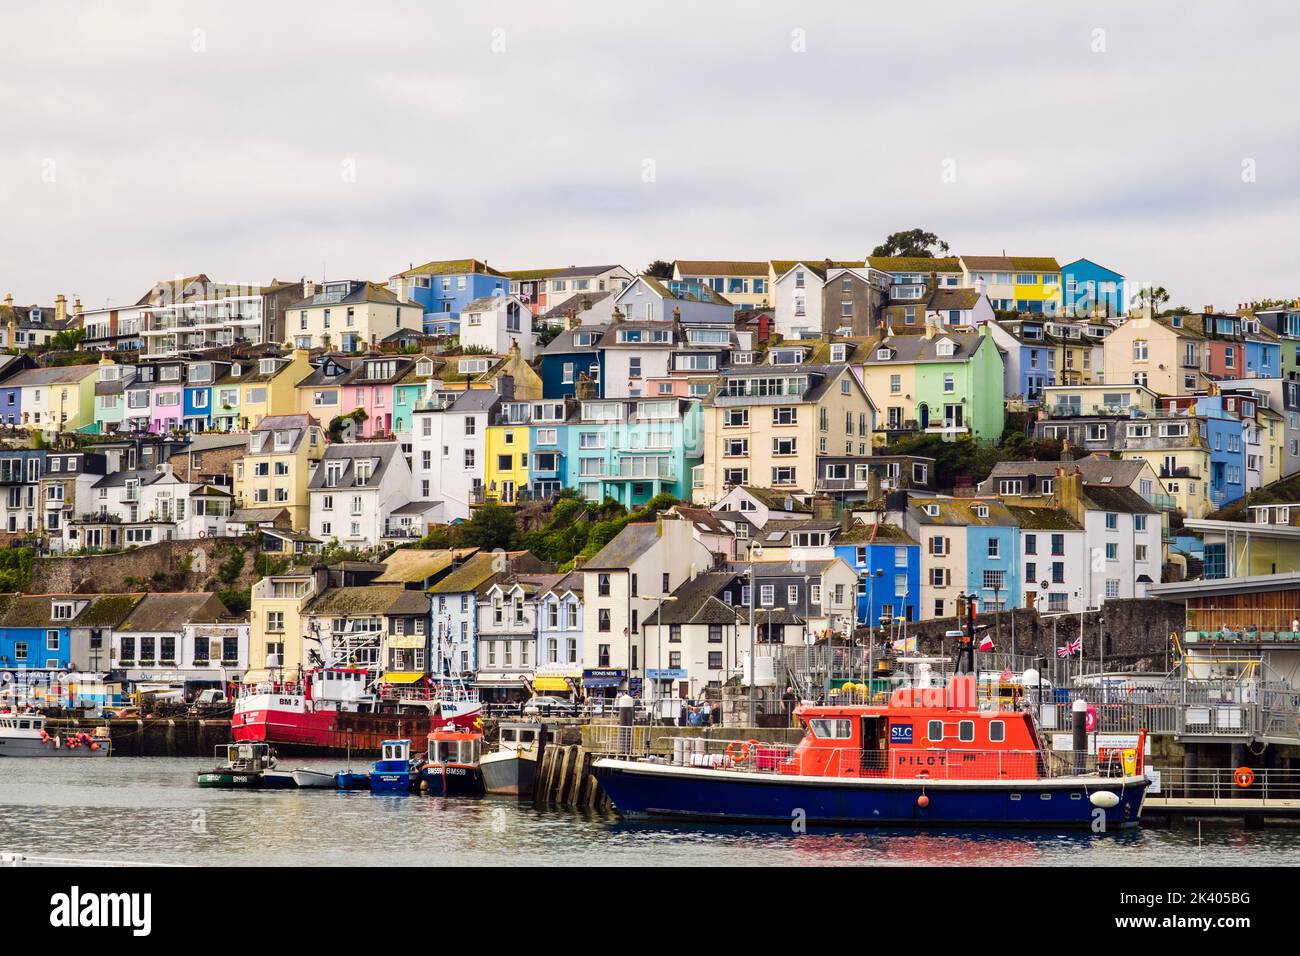 Farbenfrohe Häuser auf dem Hügel mit Blick auf den inneren Hafen und einem Steuerboot, das am Kai andockt. Brixham, Devon, England, Großbritannien Stockfoto